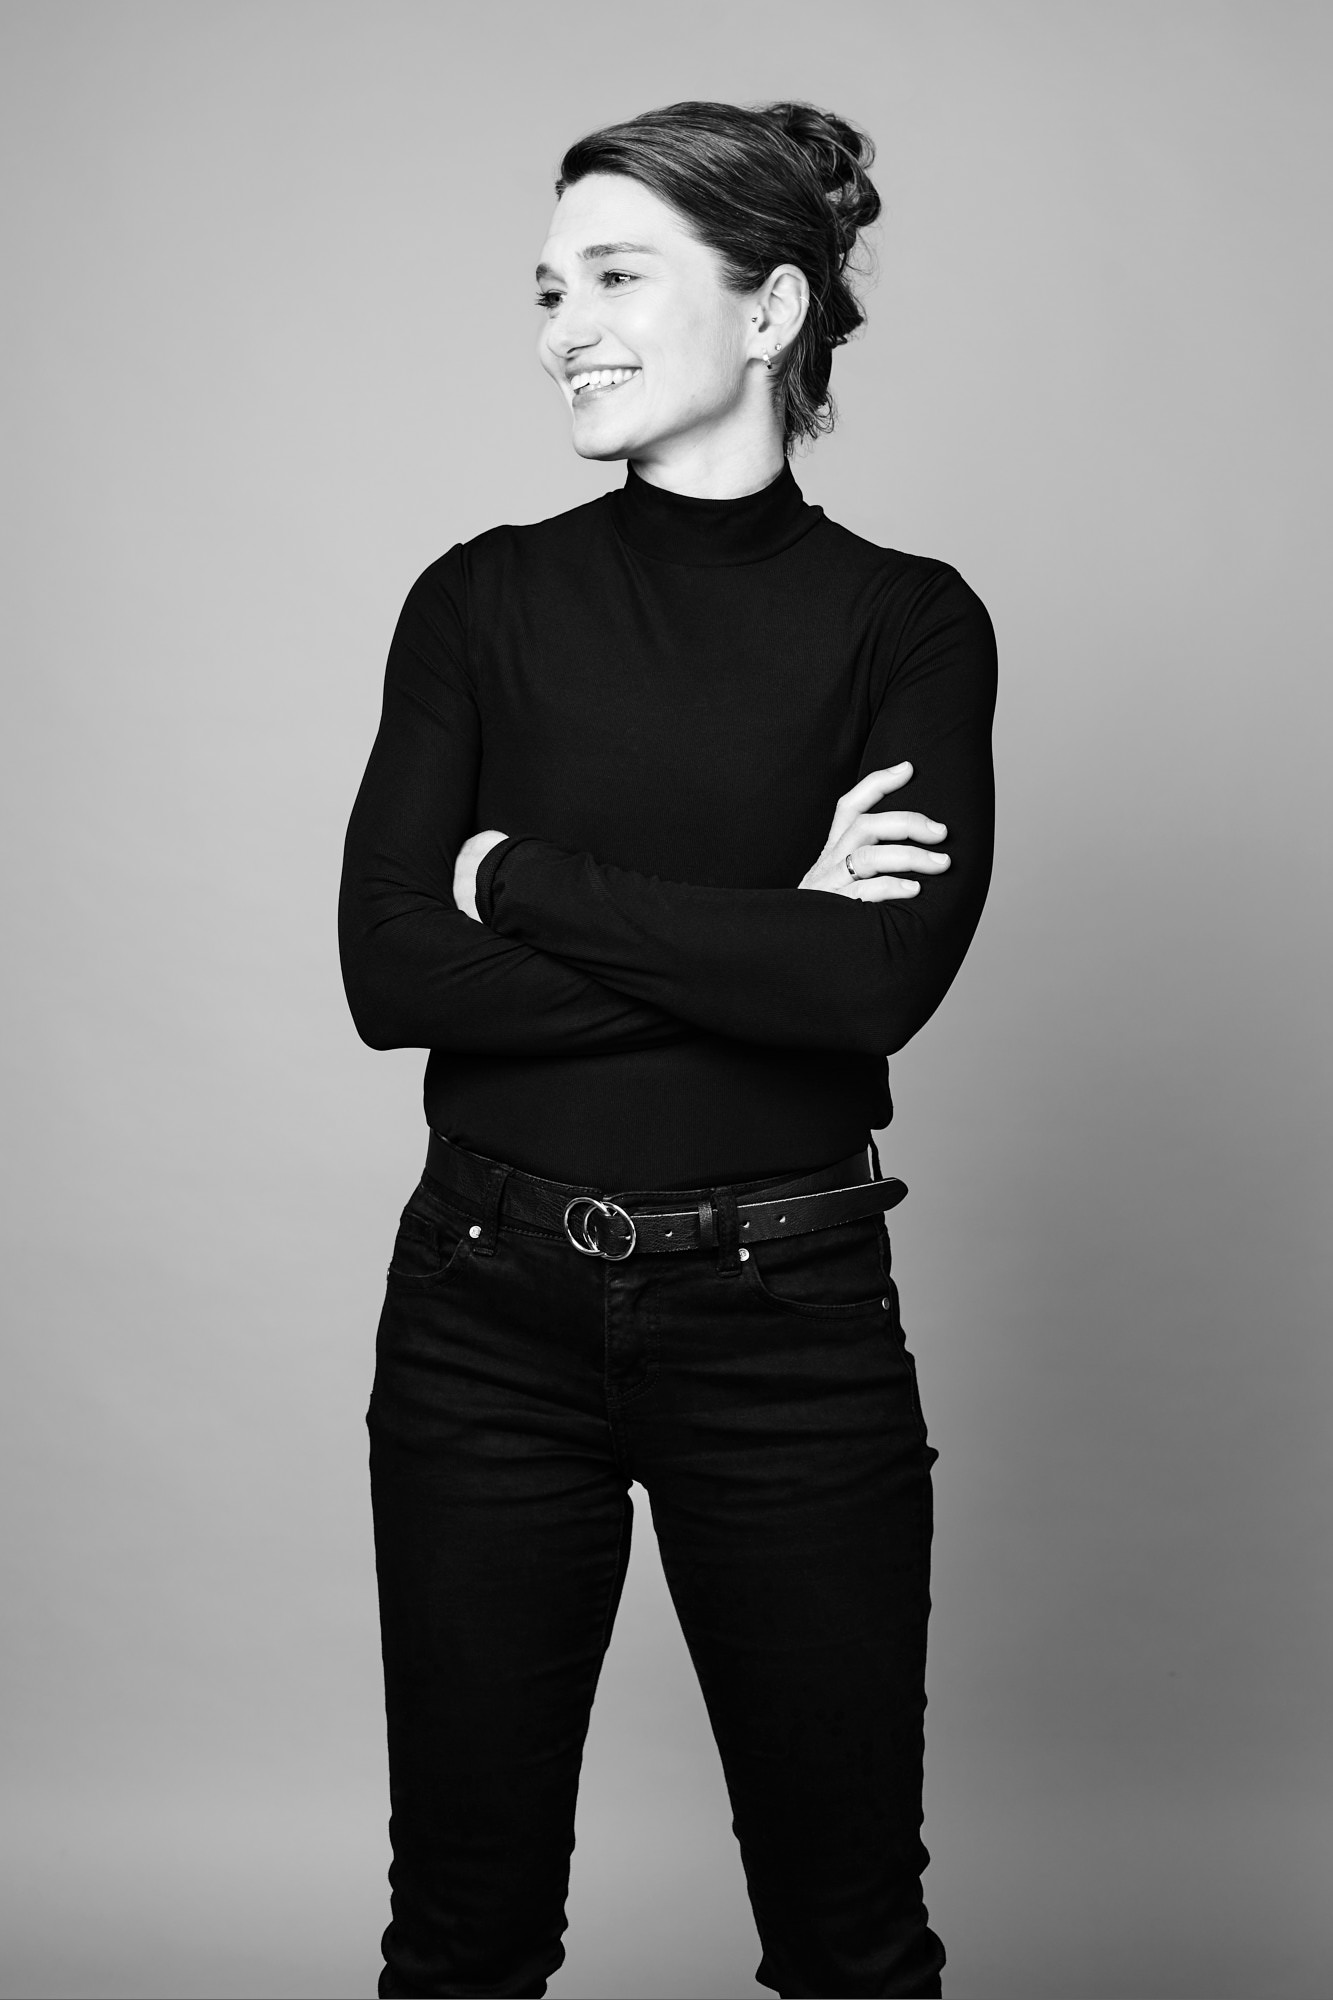 Businessfoto und Portraits der Businessfrau, Journalistin Manuela Bock, fotografiert von Rayk Weber, Fotograf aus Magdeburg